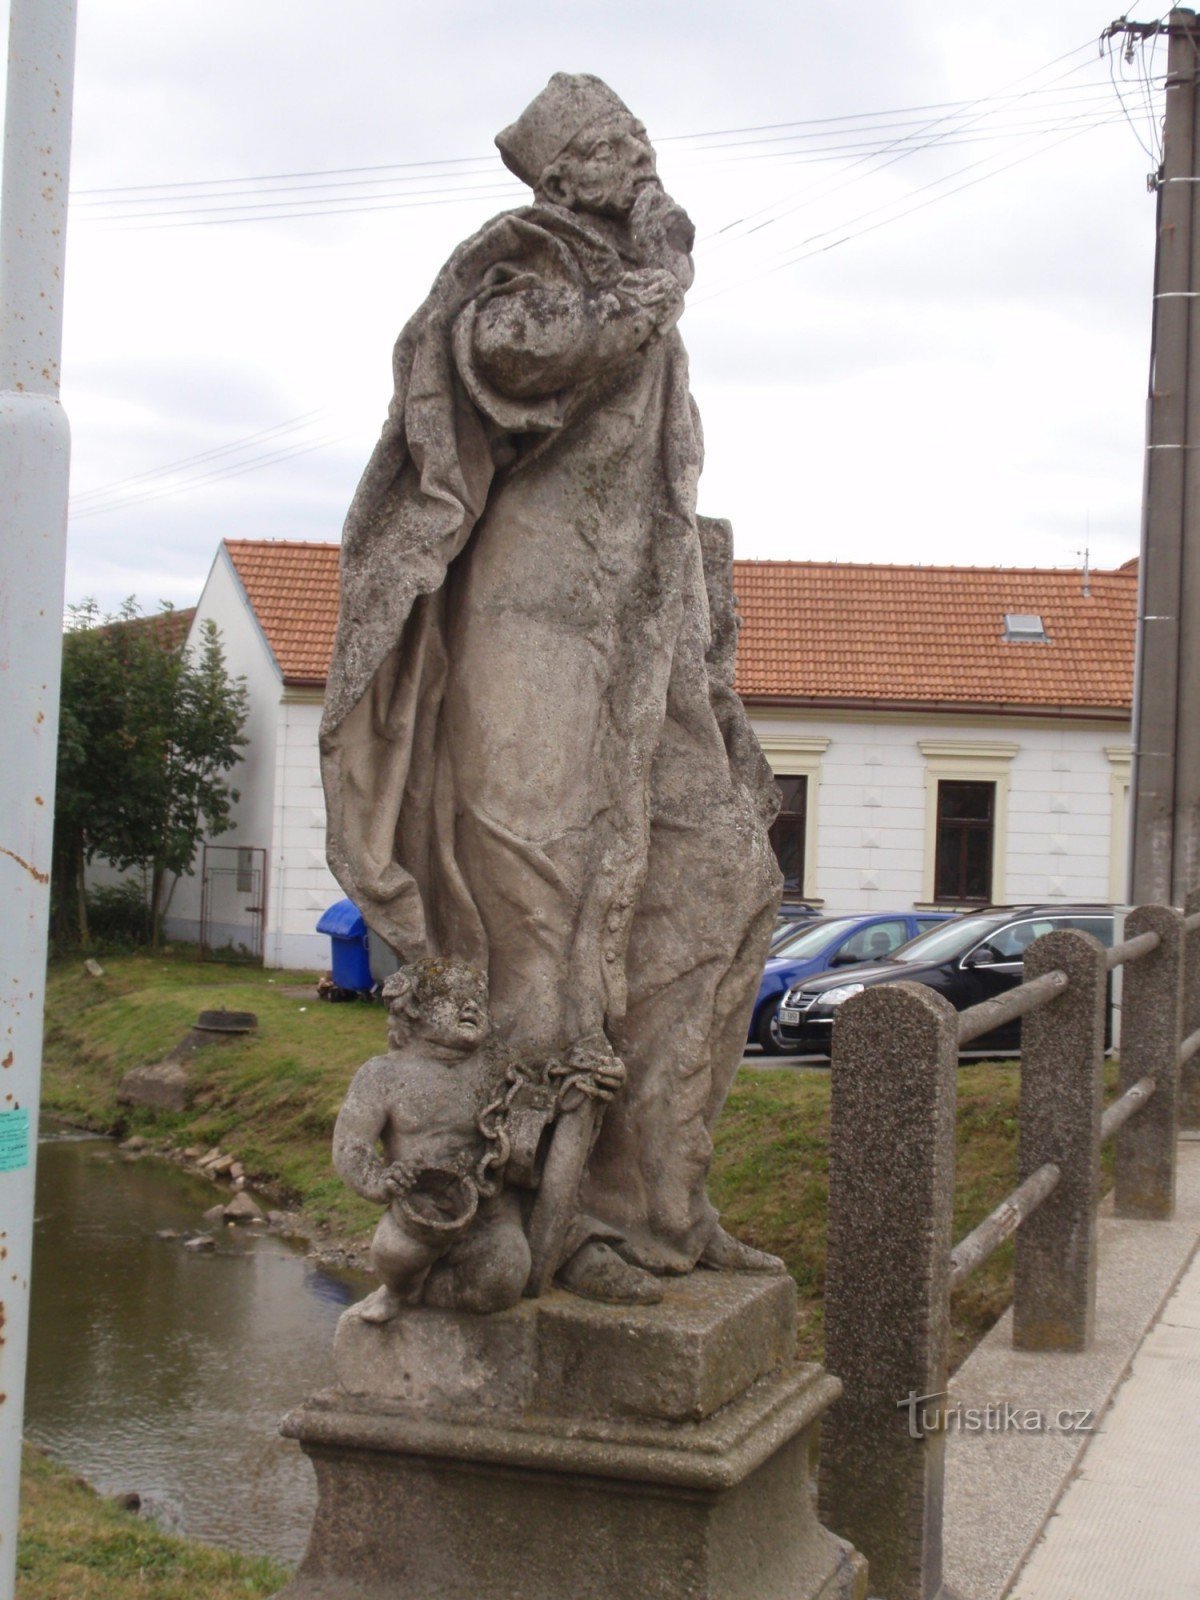 Stareč - staty av Jan Sarkander